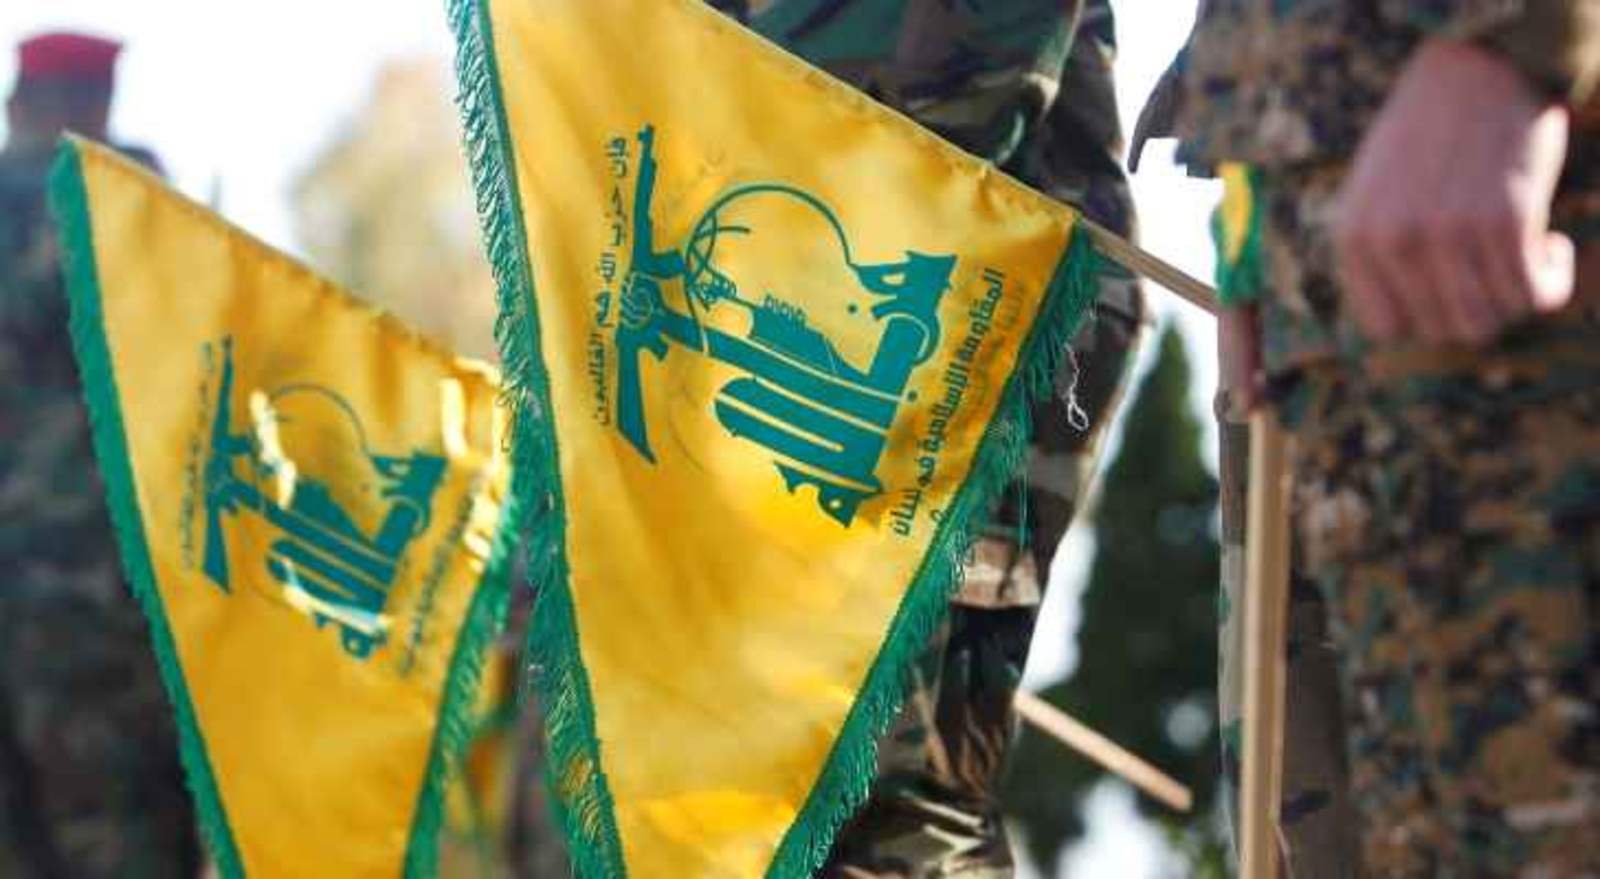 حزب الله: إستهدفنا ظهر اليوم ‏التجهيزات التجسّسية في تلة الكوبرا بالأسلحة المناسبة ‏ما أدّى إلى إصابتها وتدميرها